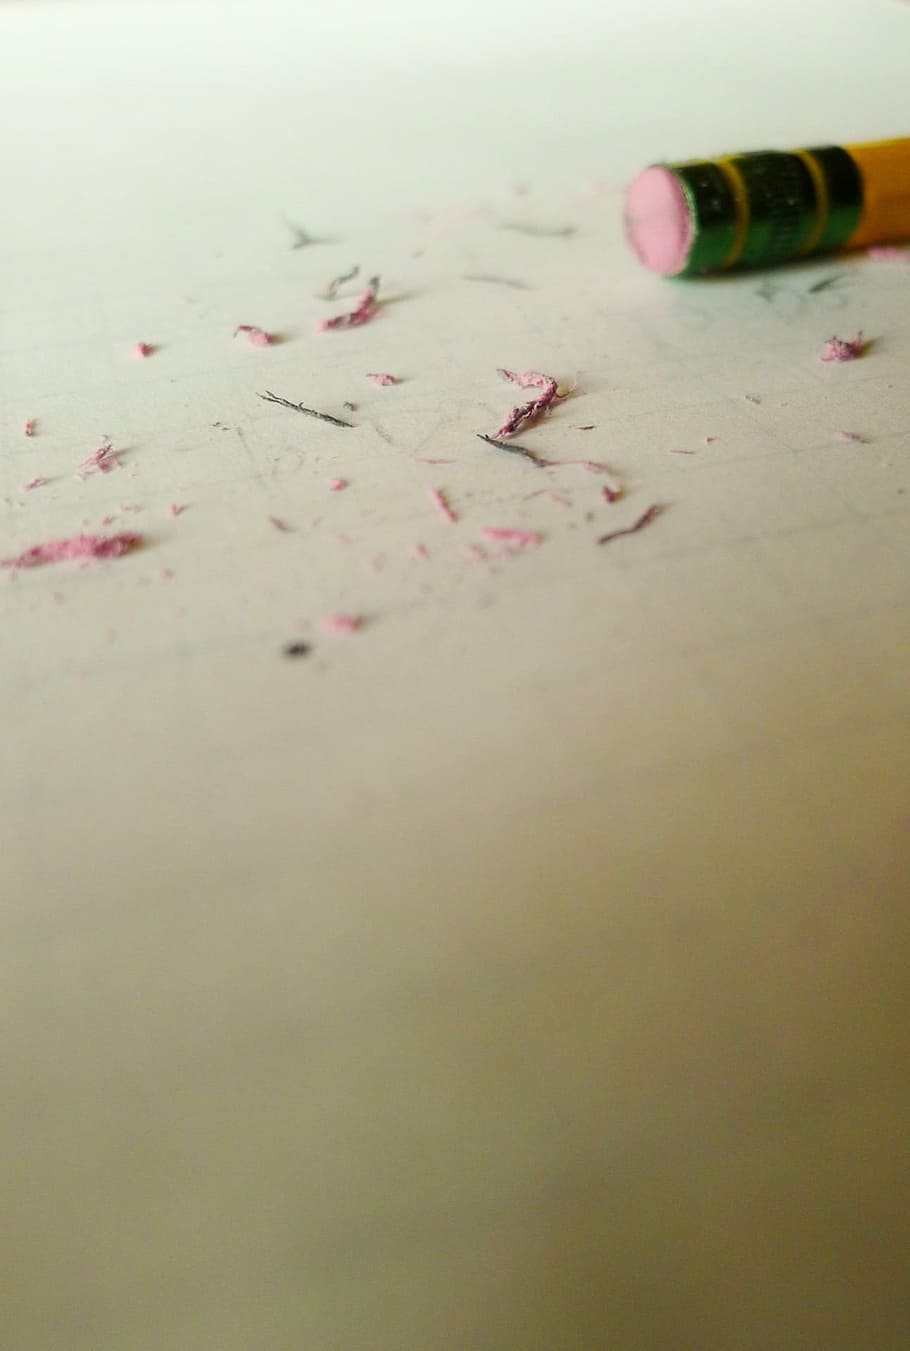 pencil, white, printer paper, eraser, paper, writing, blank, writer' block, nothing, background